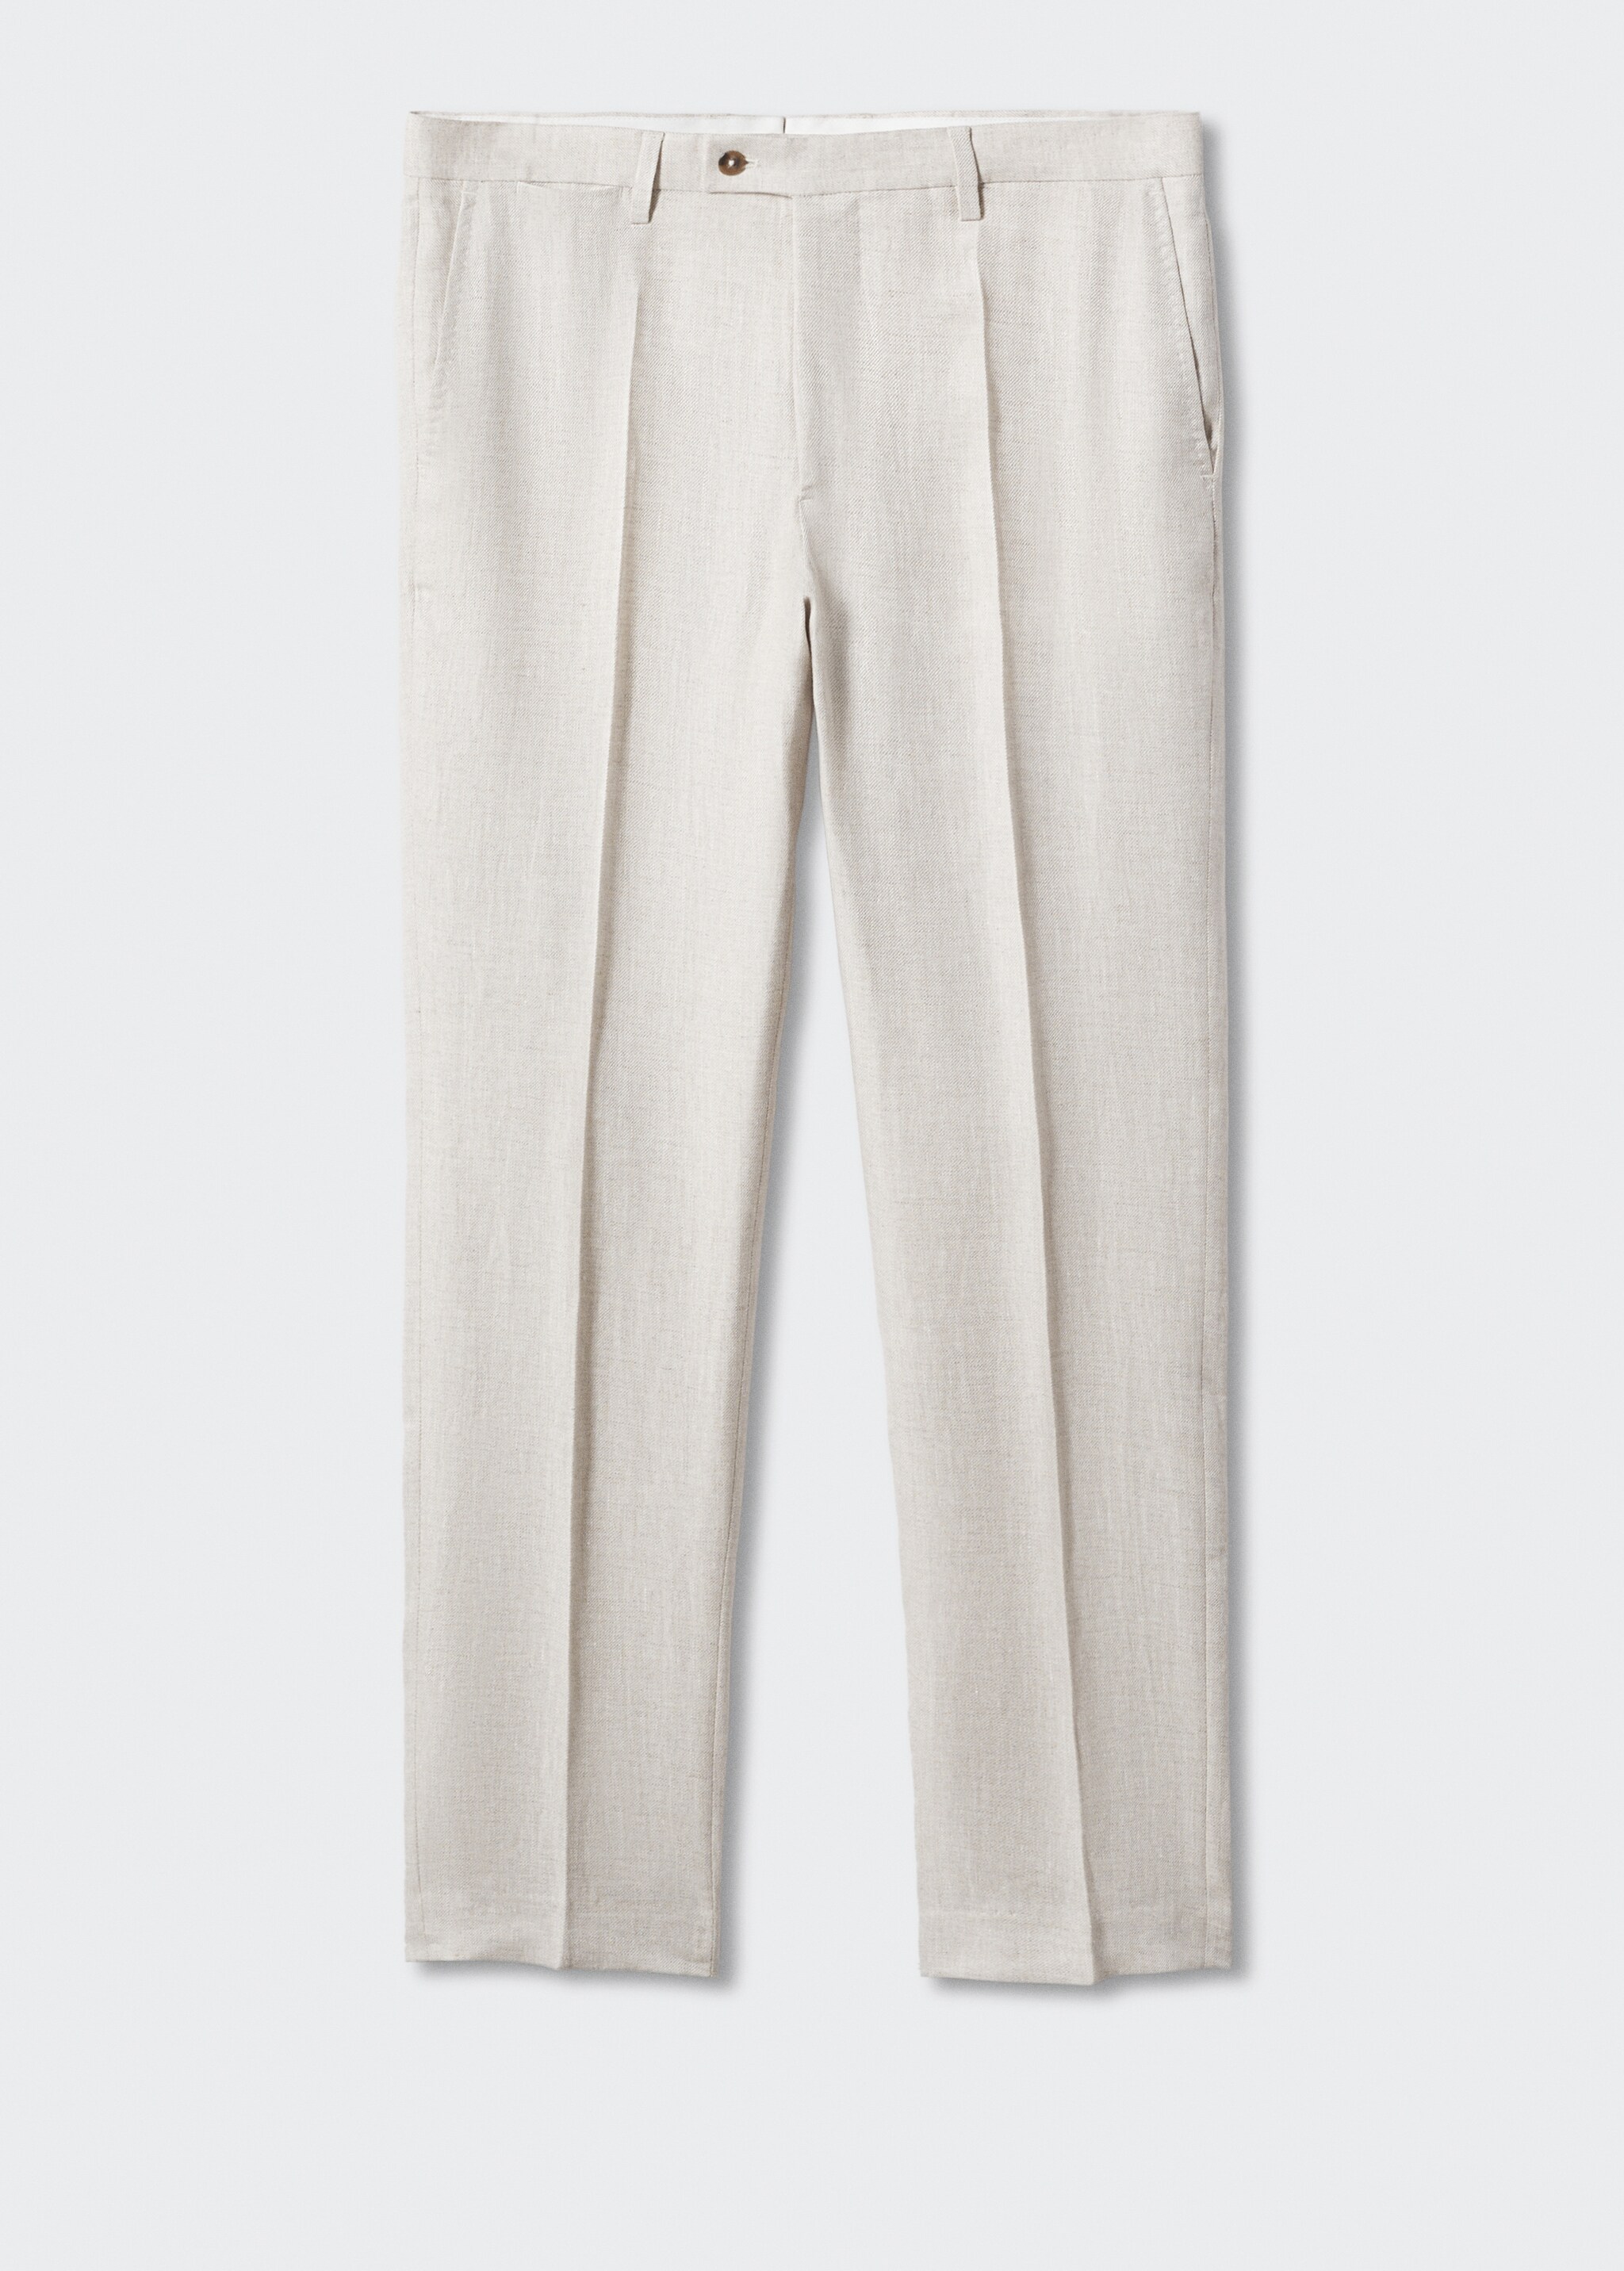 Pantalon costume 100 % lin - Article sans modèle